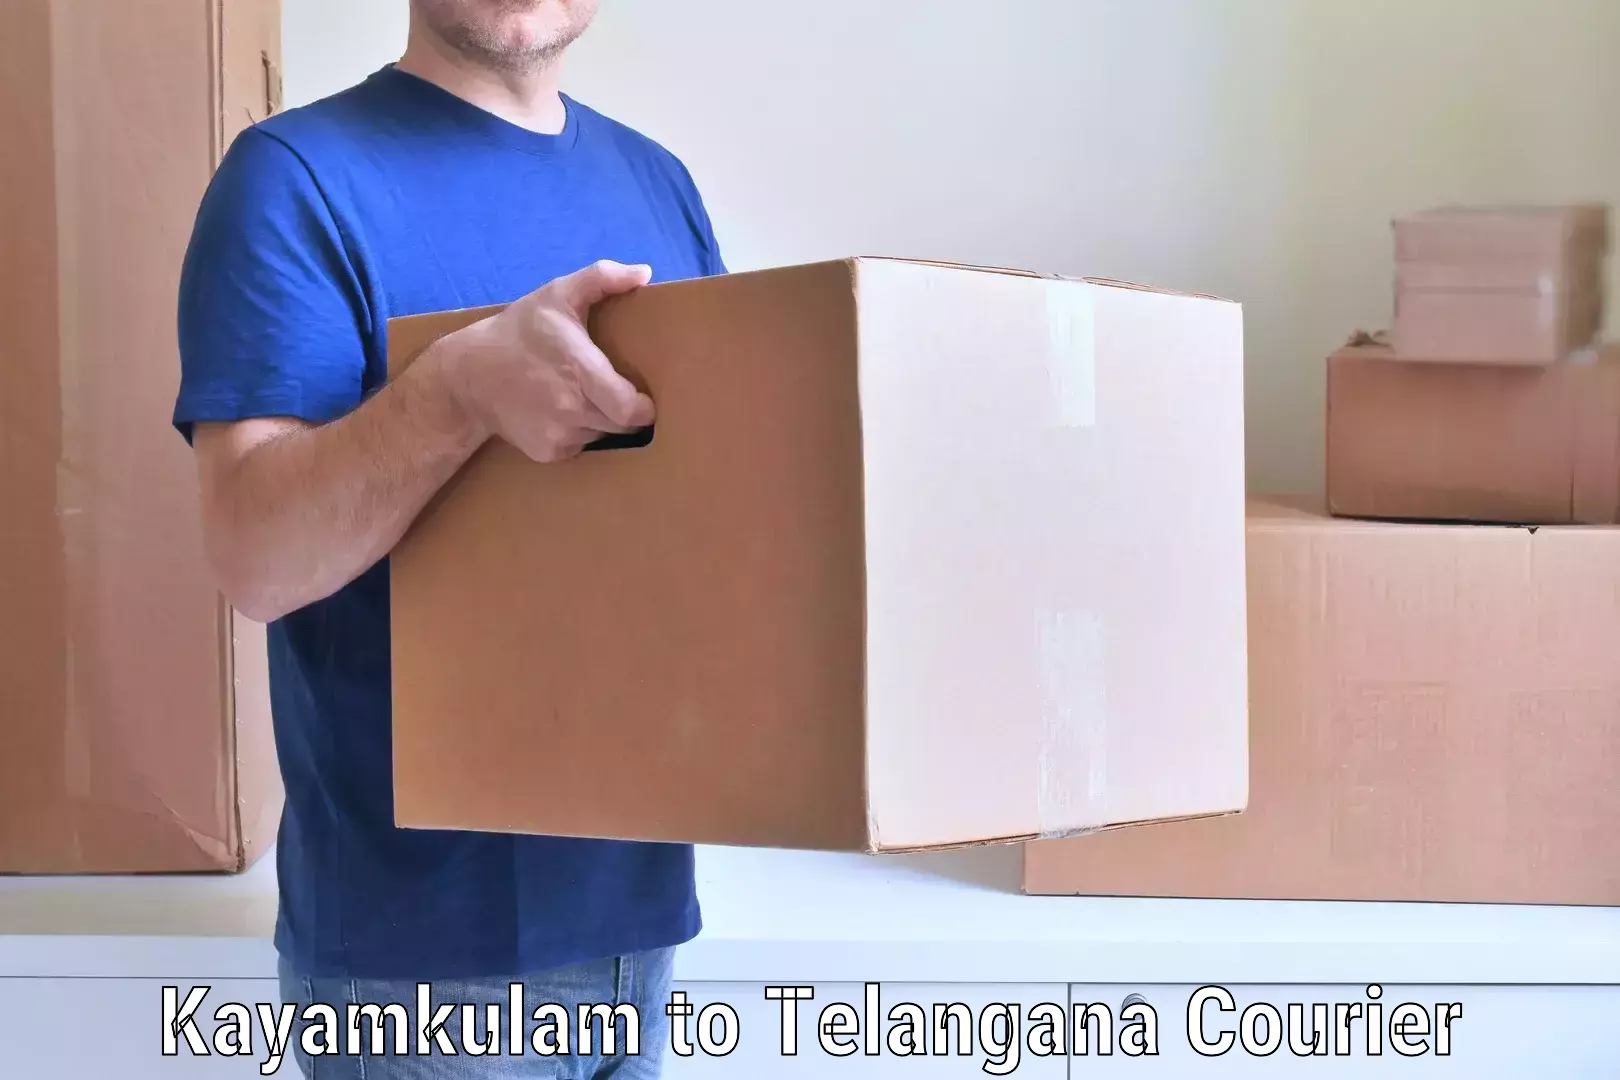 Home moving experts Kayamkulam to Wanaparthy